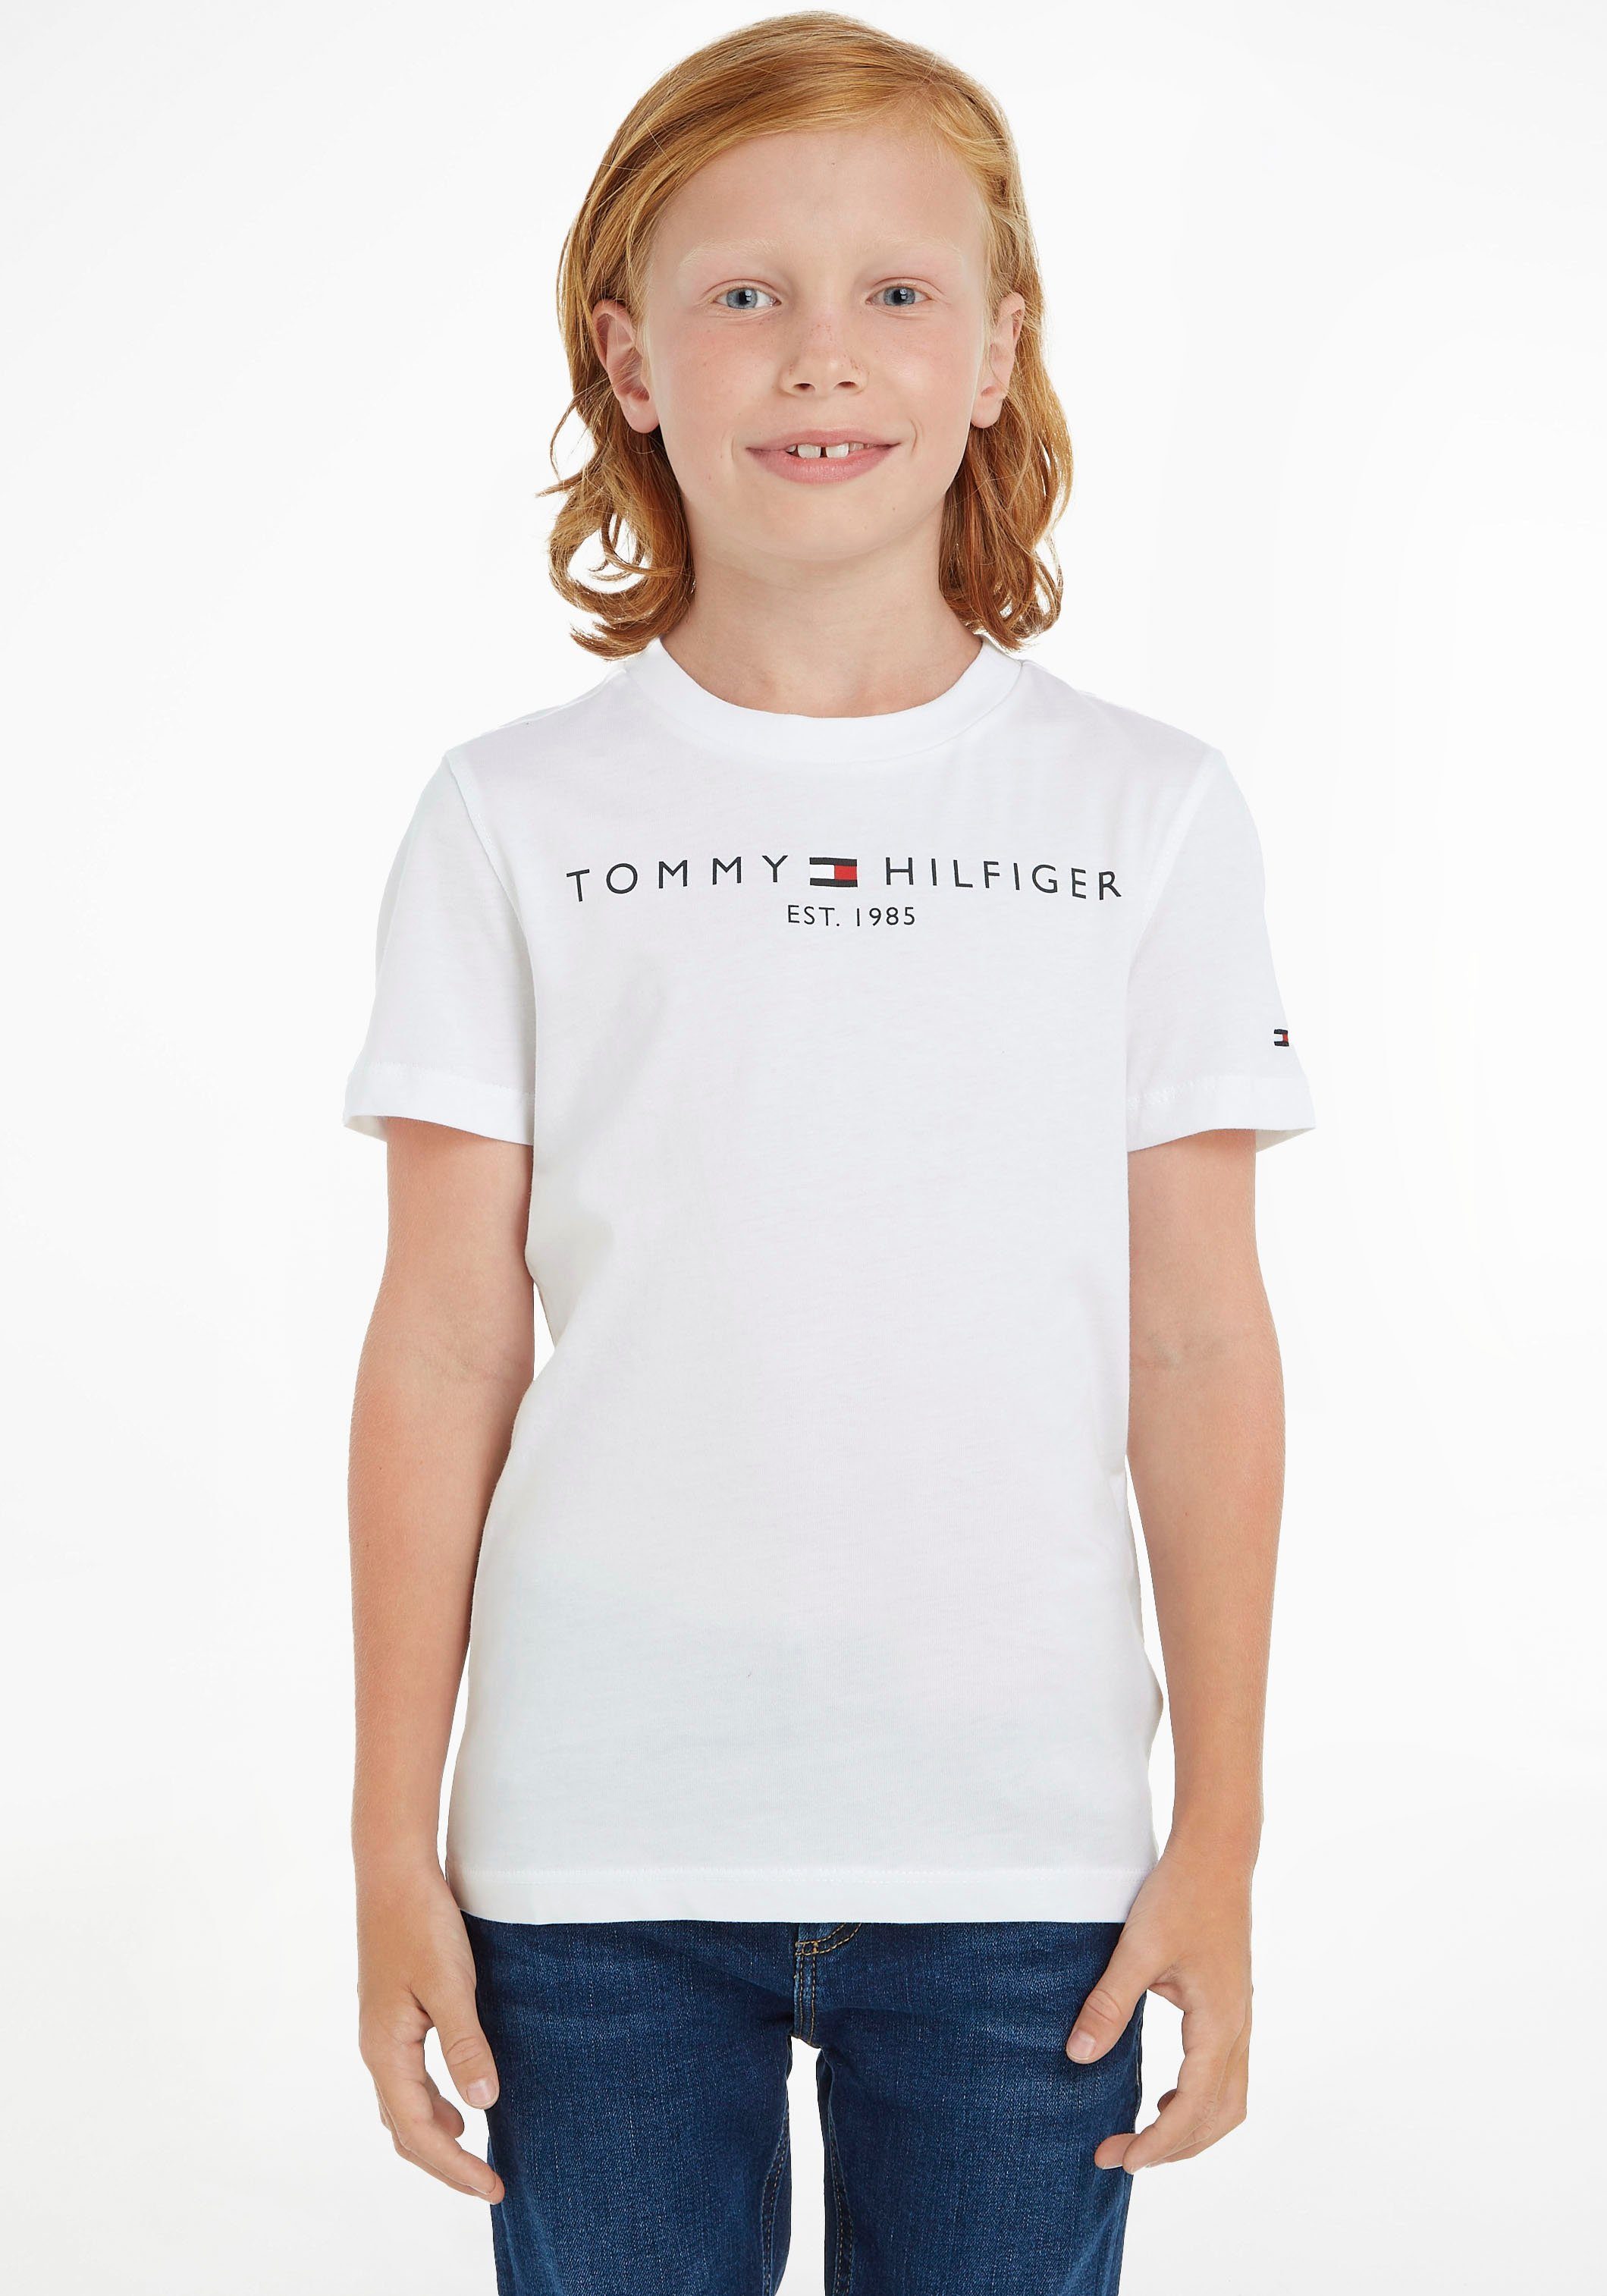 TEE Kids Tommy T-Shirt ESSENTIAL Kinder Jungen Junior Mädchen Hilfiger MiniMe,für und